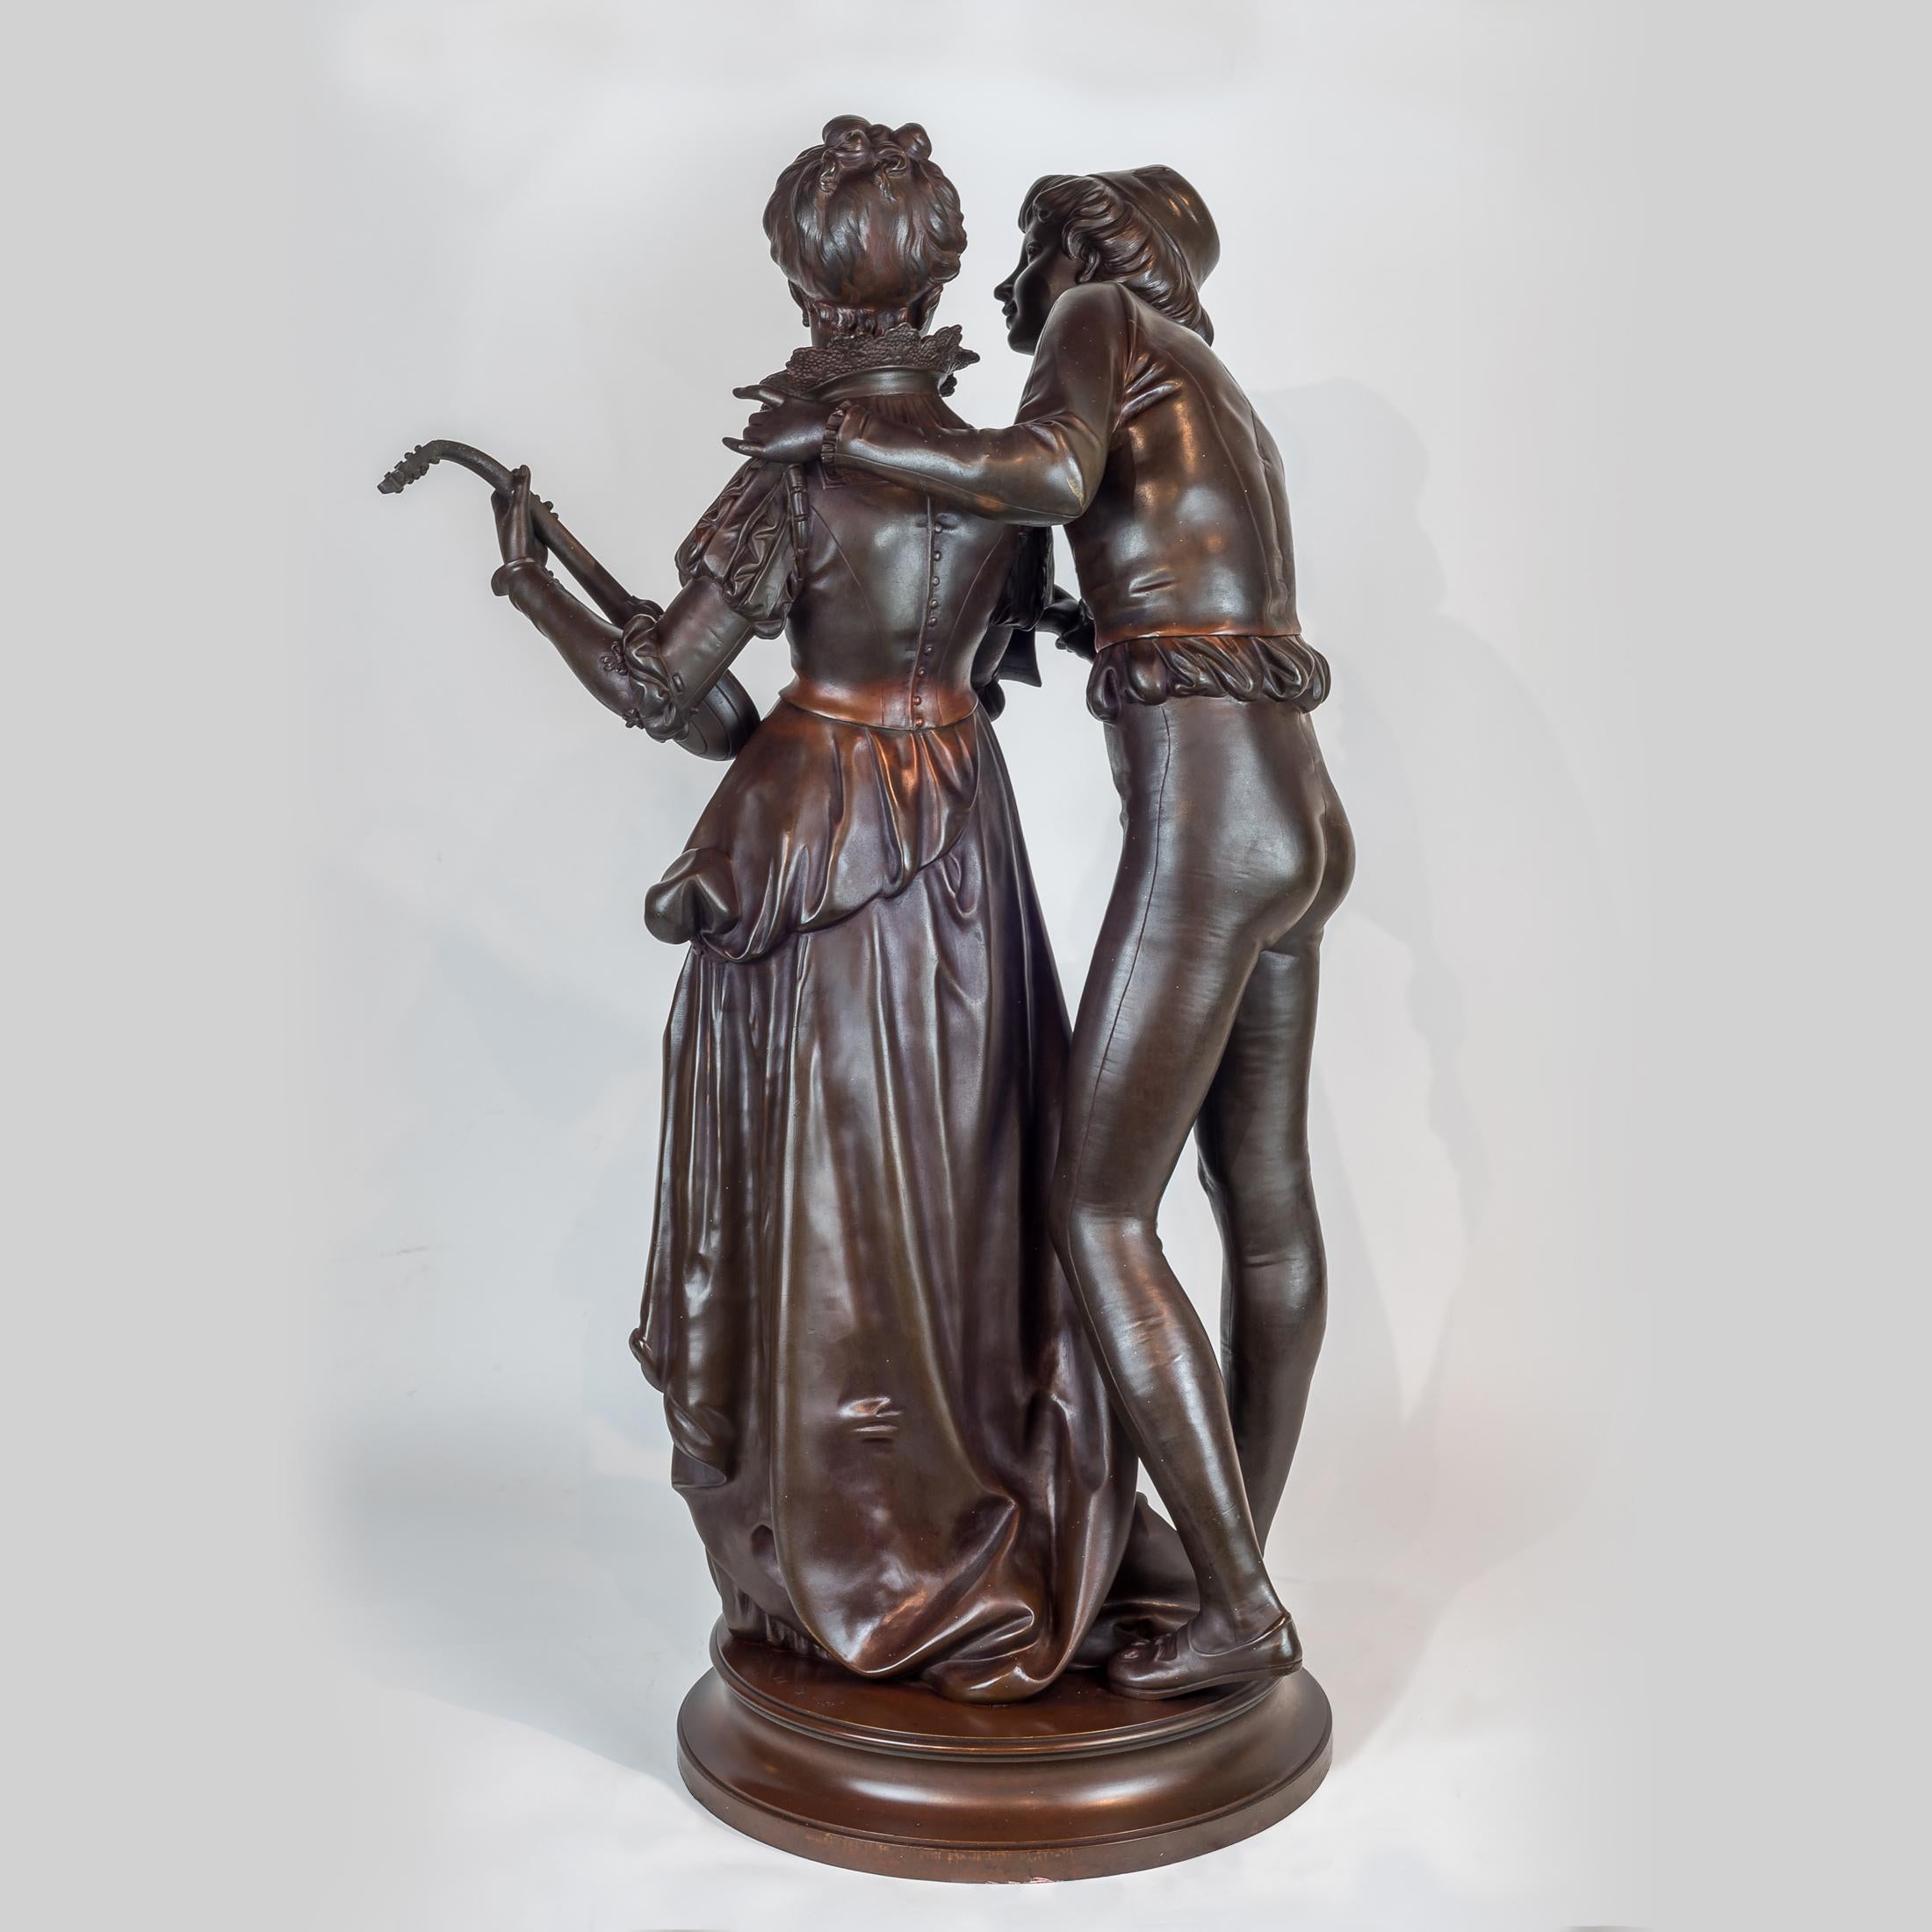 VINCENT DESIRE RAURE DE BROUSSE
Français, (1876-1908)

Sculpture en bronze d'amoureux

Inscrit 